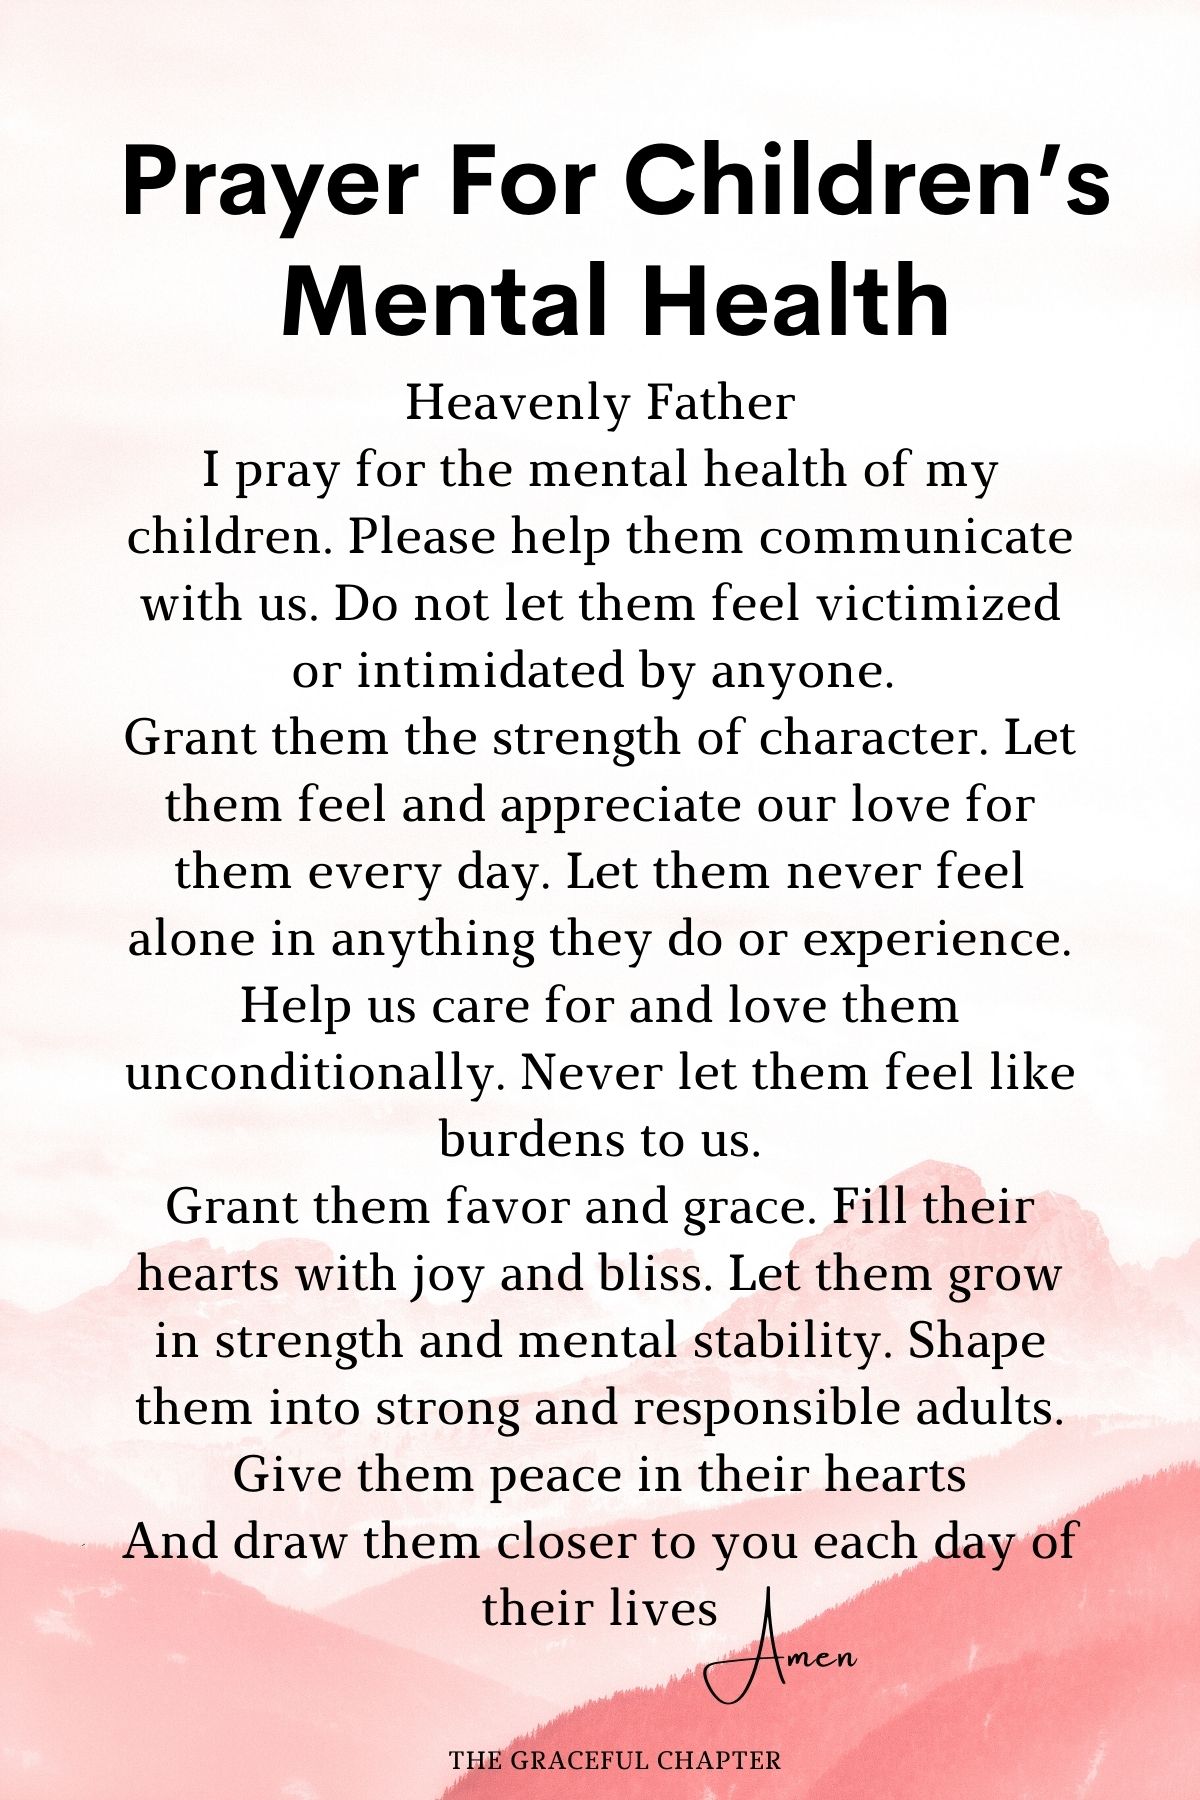 Prayer for children’s mental health